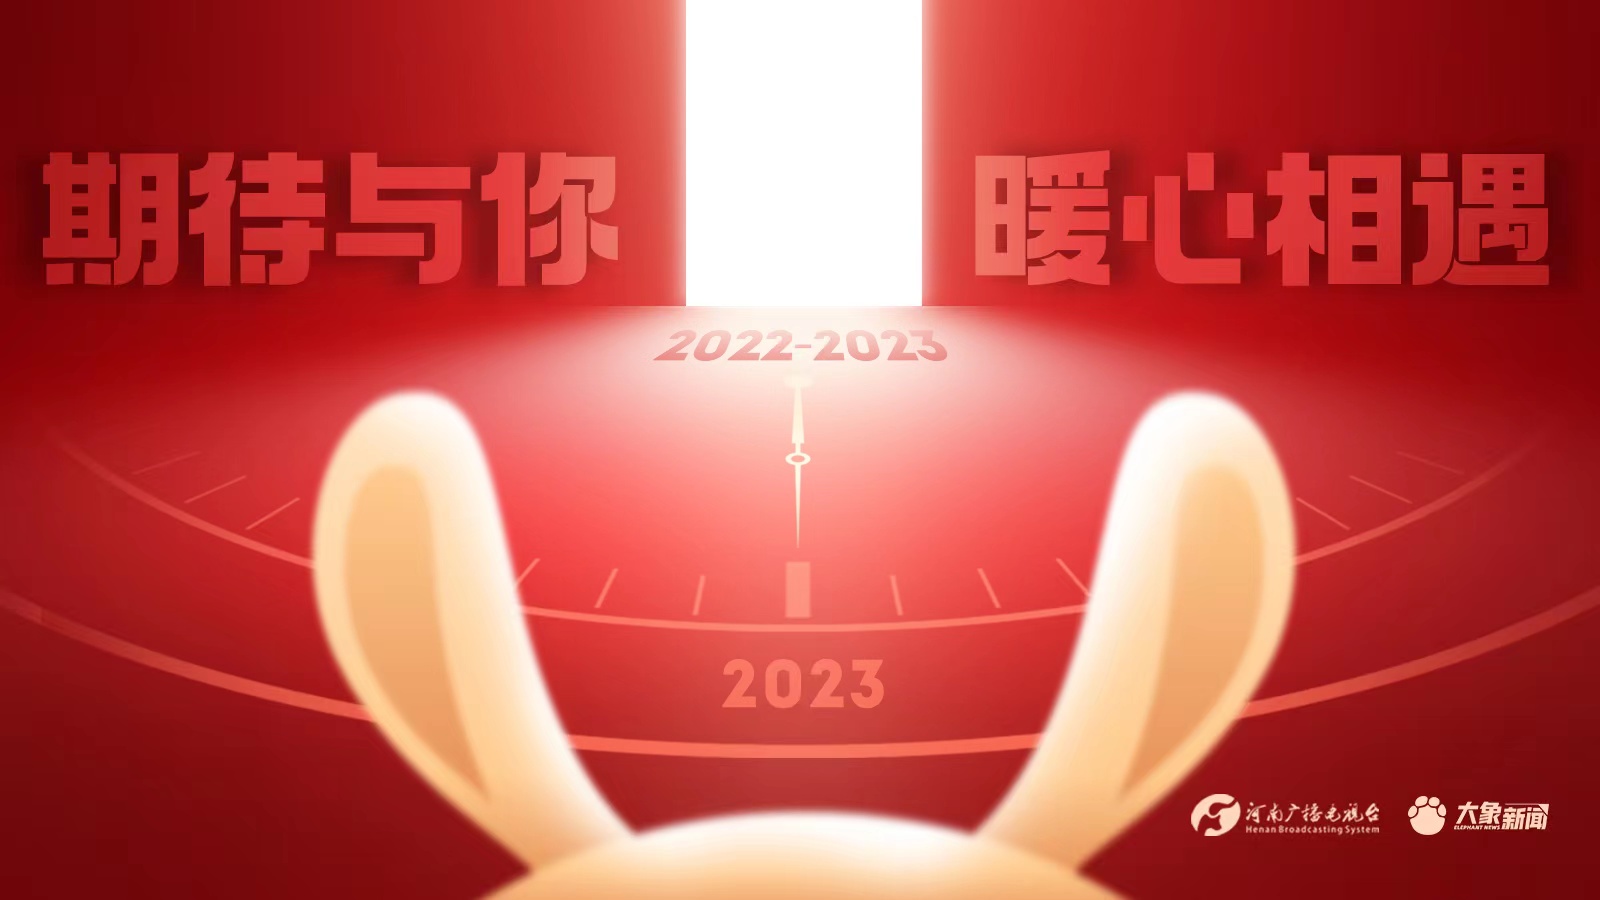 2022→2023 期待与你暖心相遇